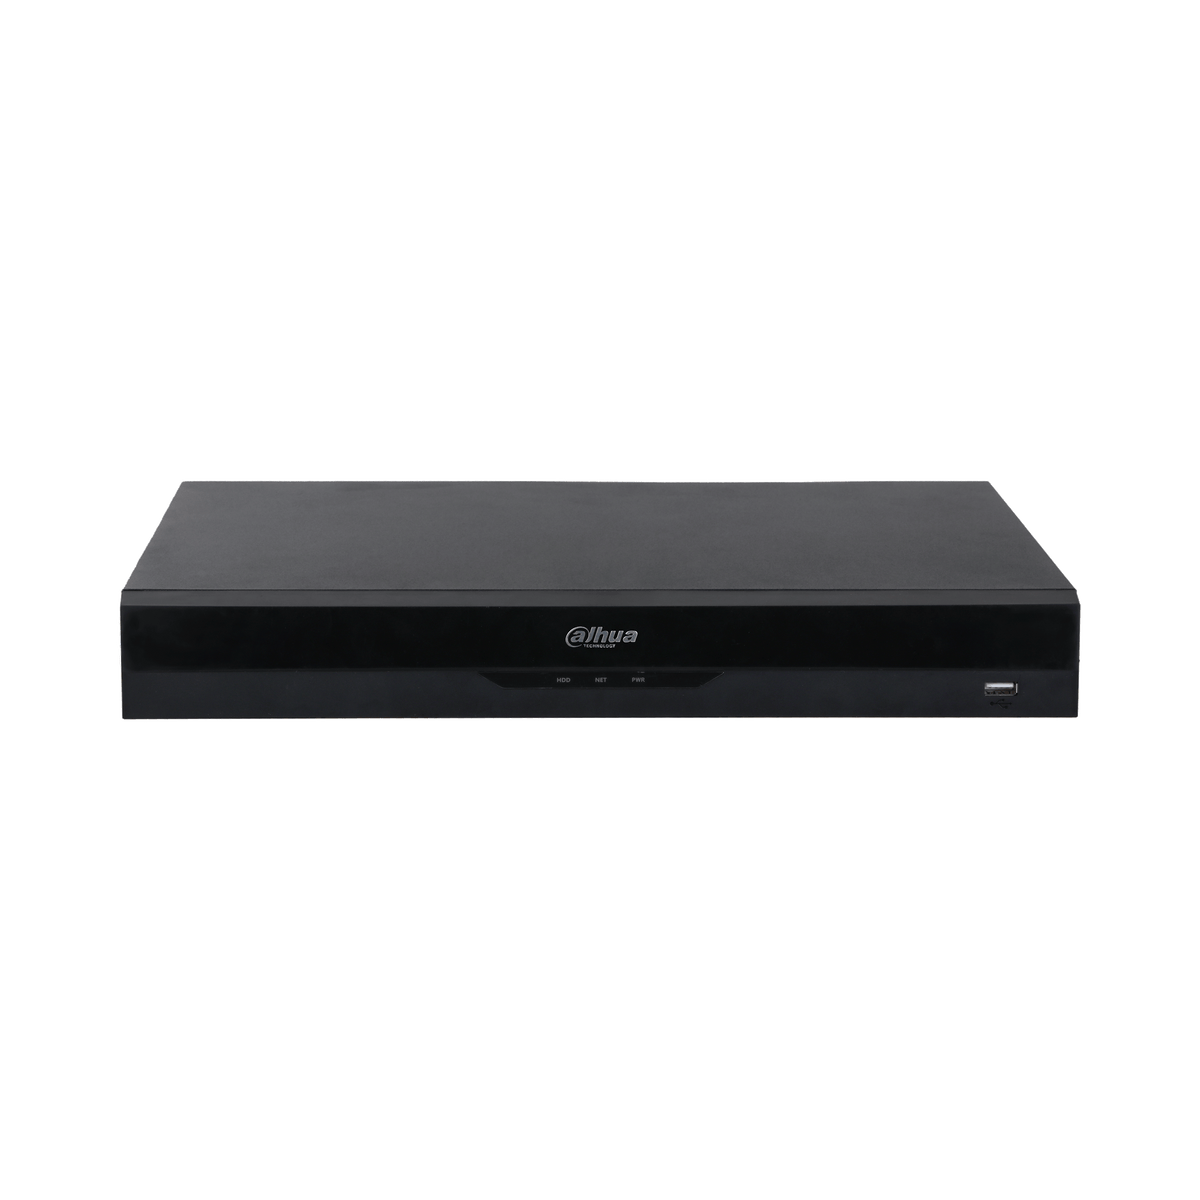 DAHUA NVR4208-EI 8CH 1U 2HDDs WizSense Network Video Recorder